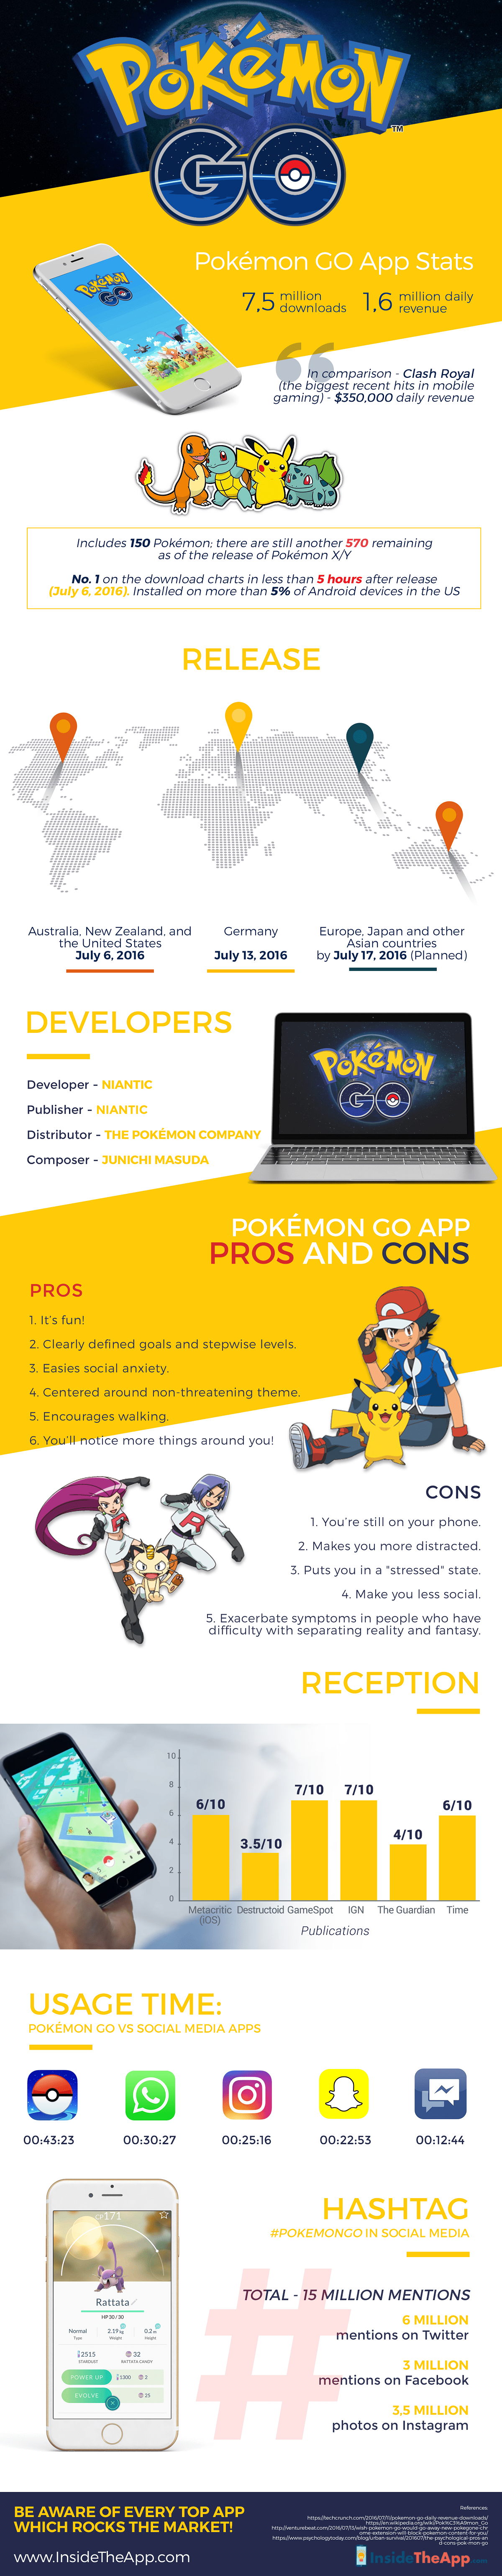 Pokemon Go App Stats #infographic 